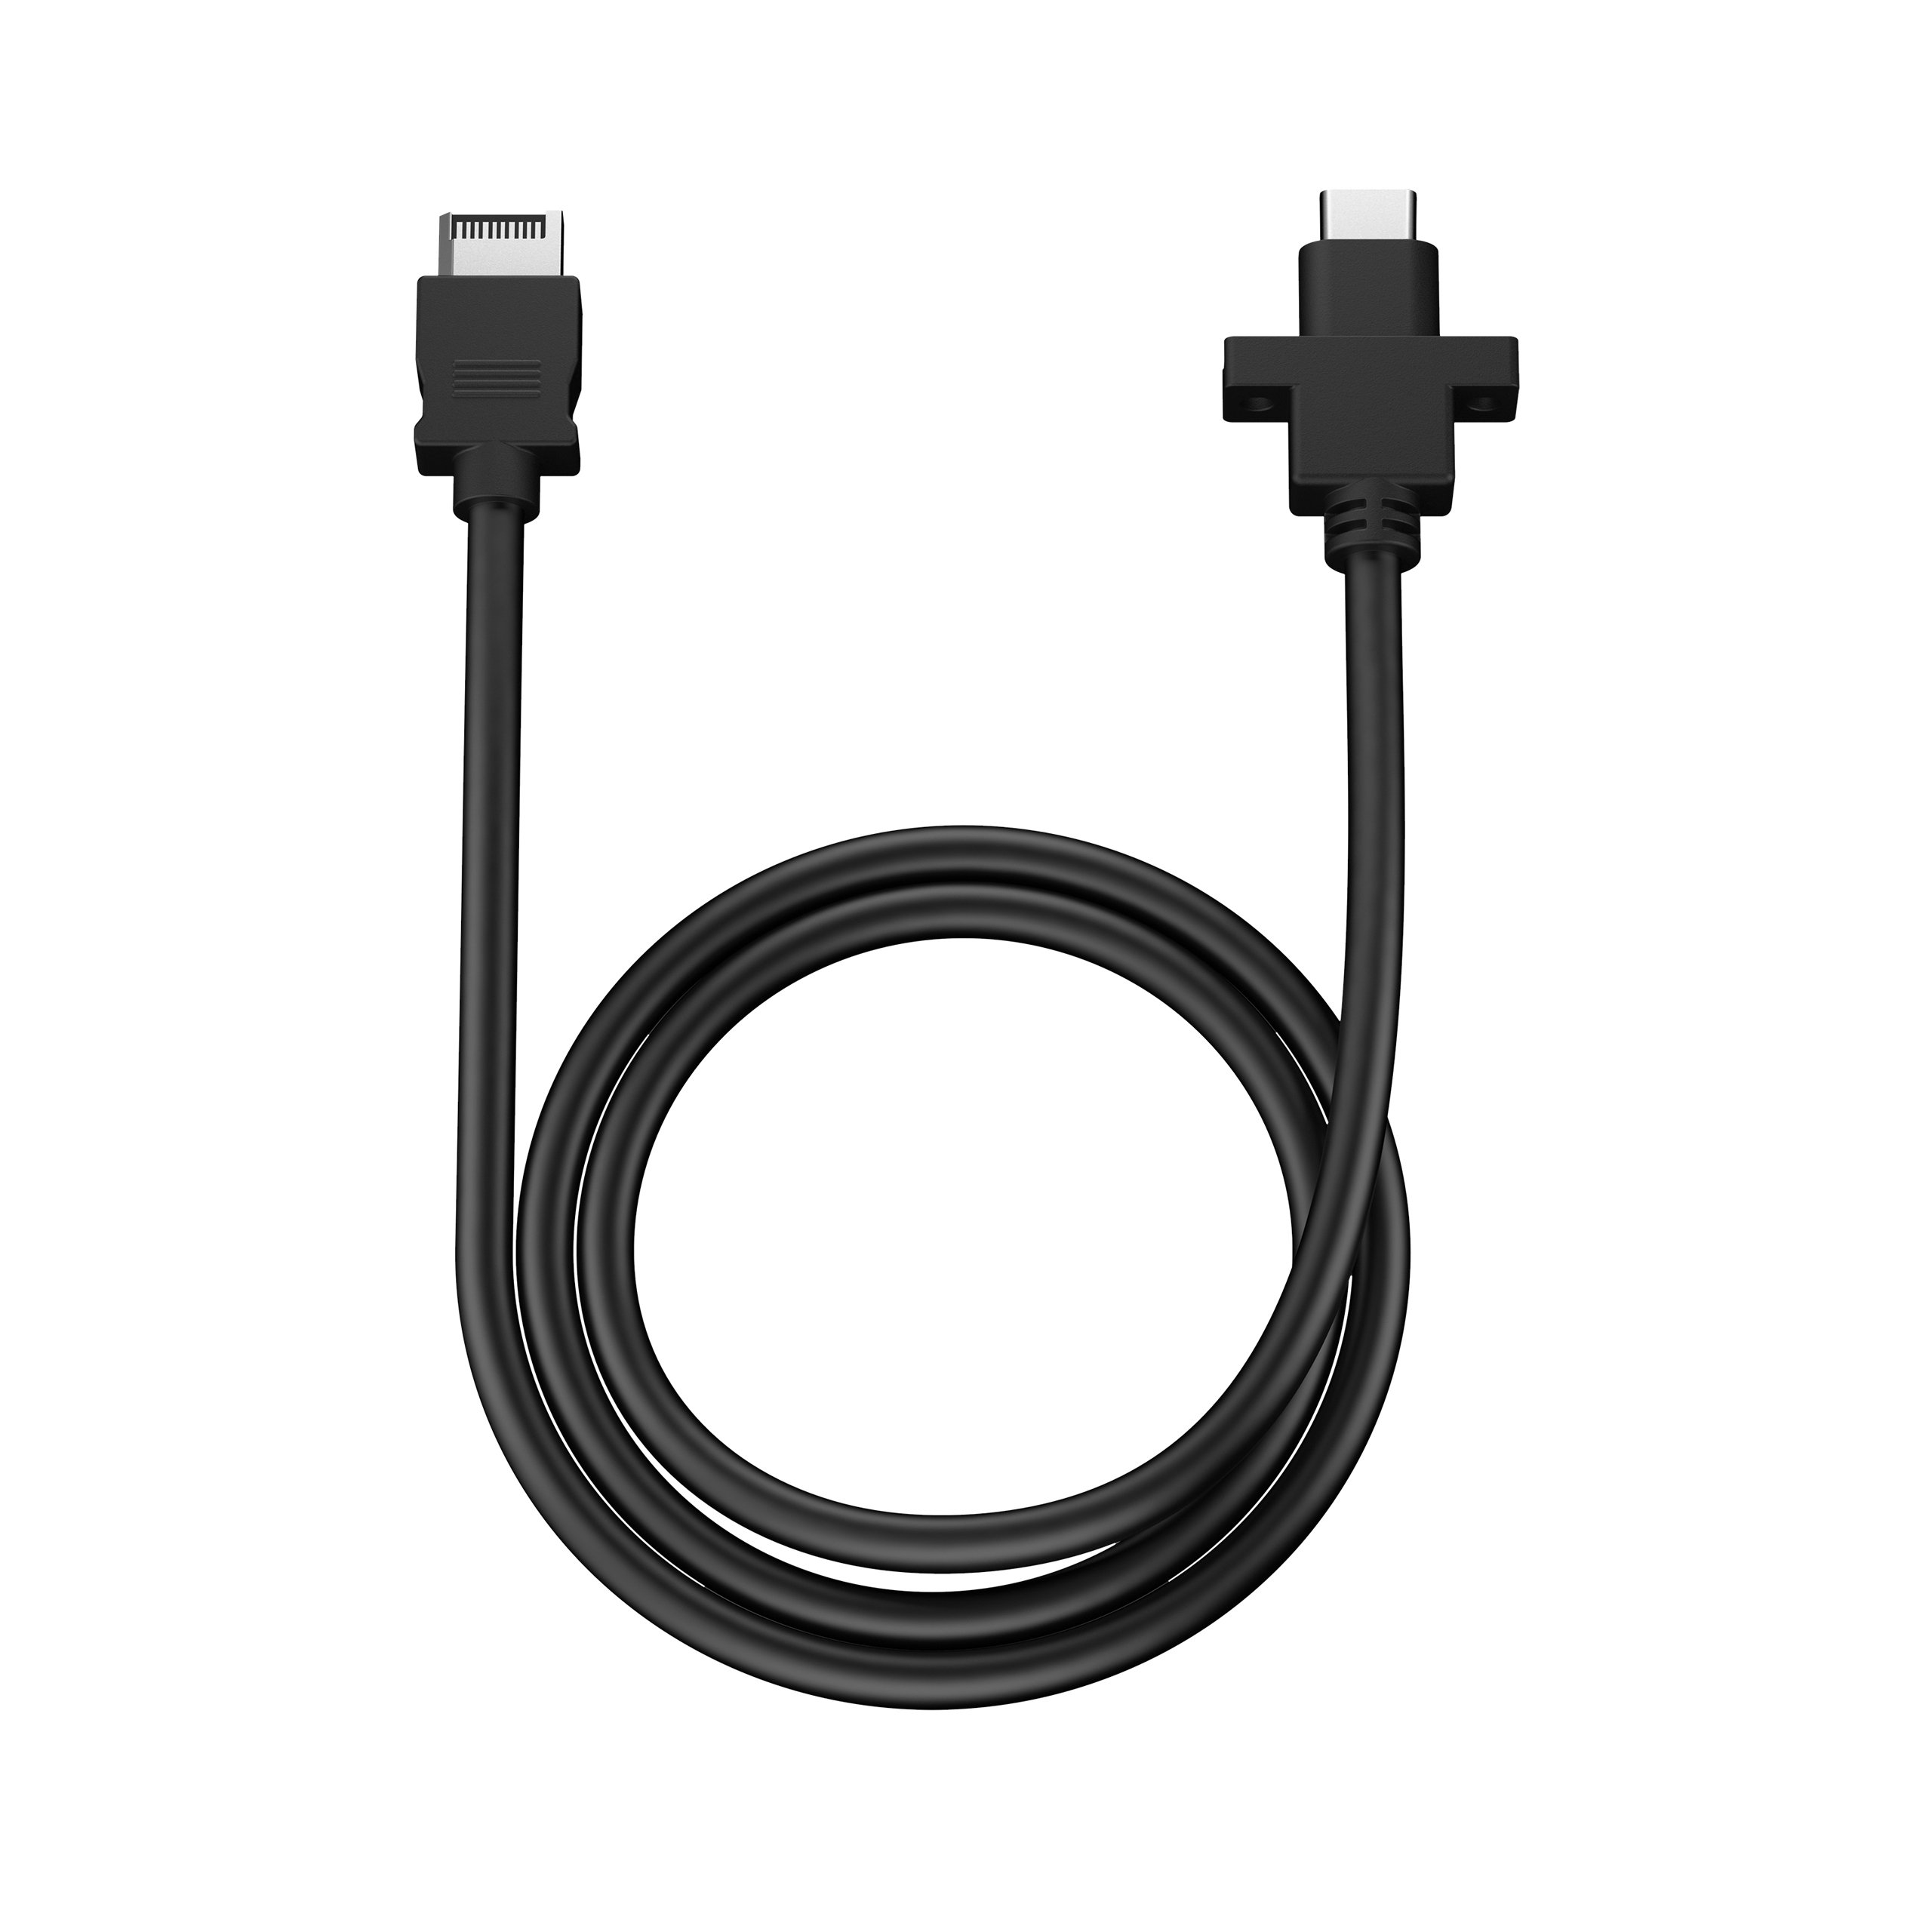 USB-C 10Gbps Cable – Model D — Fractal Design